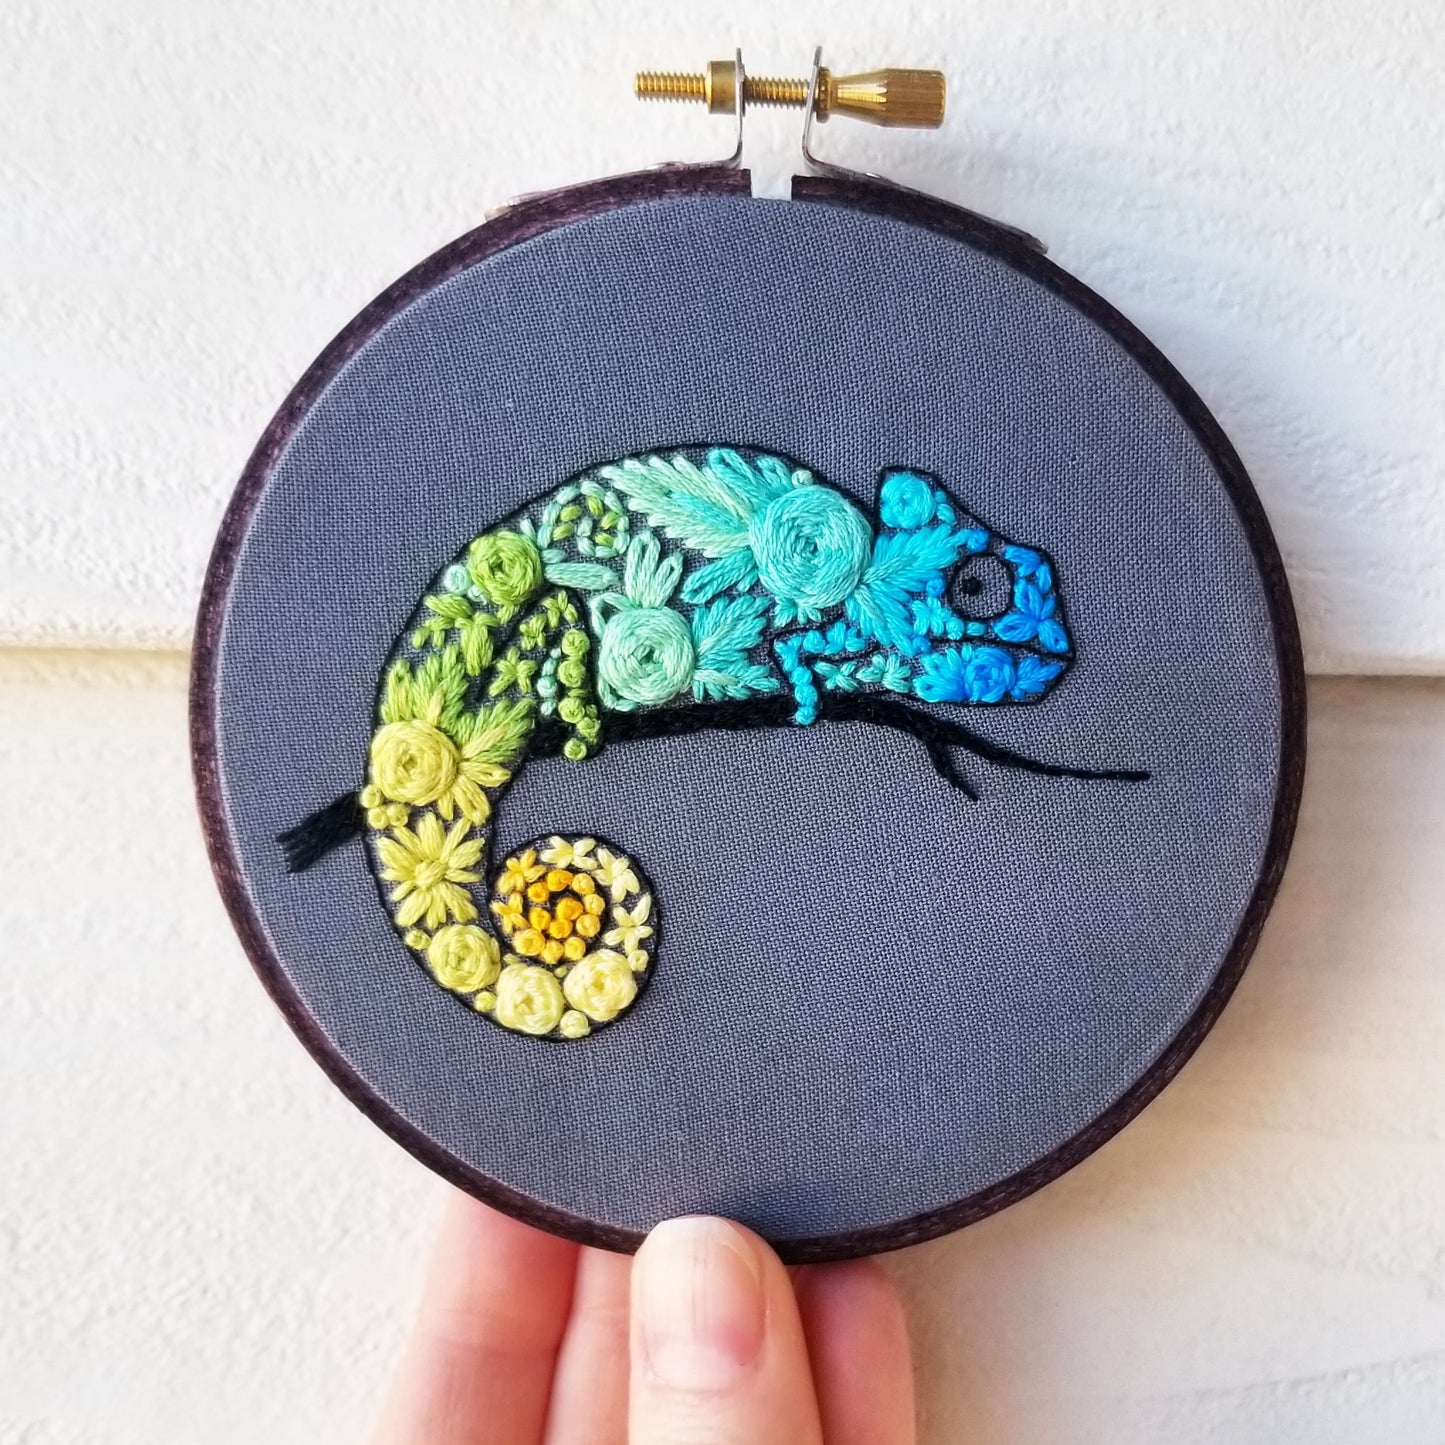 Chameleon Embroidery Kit